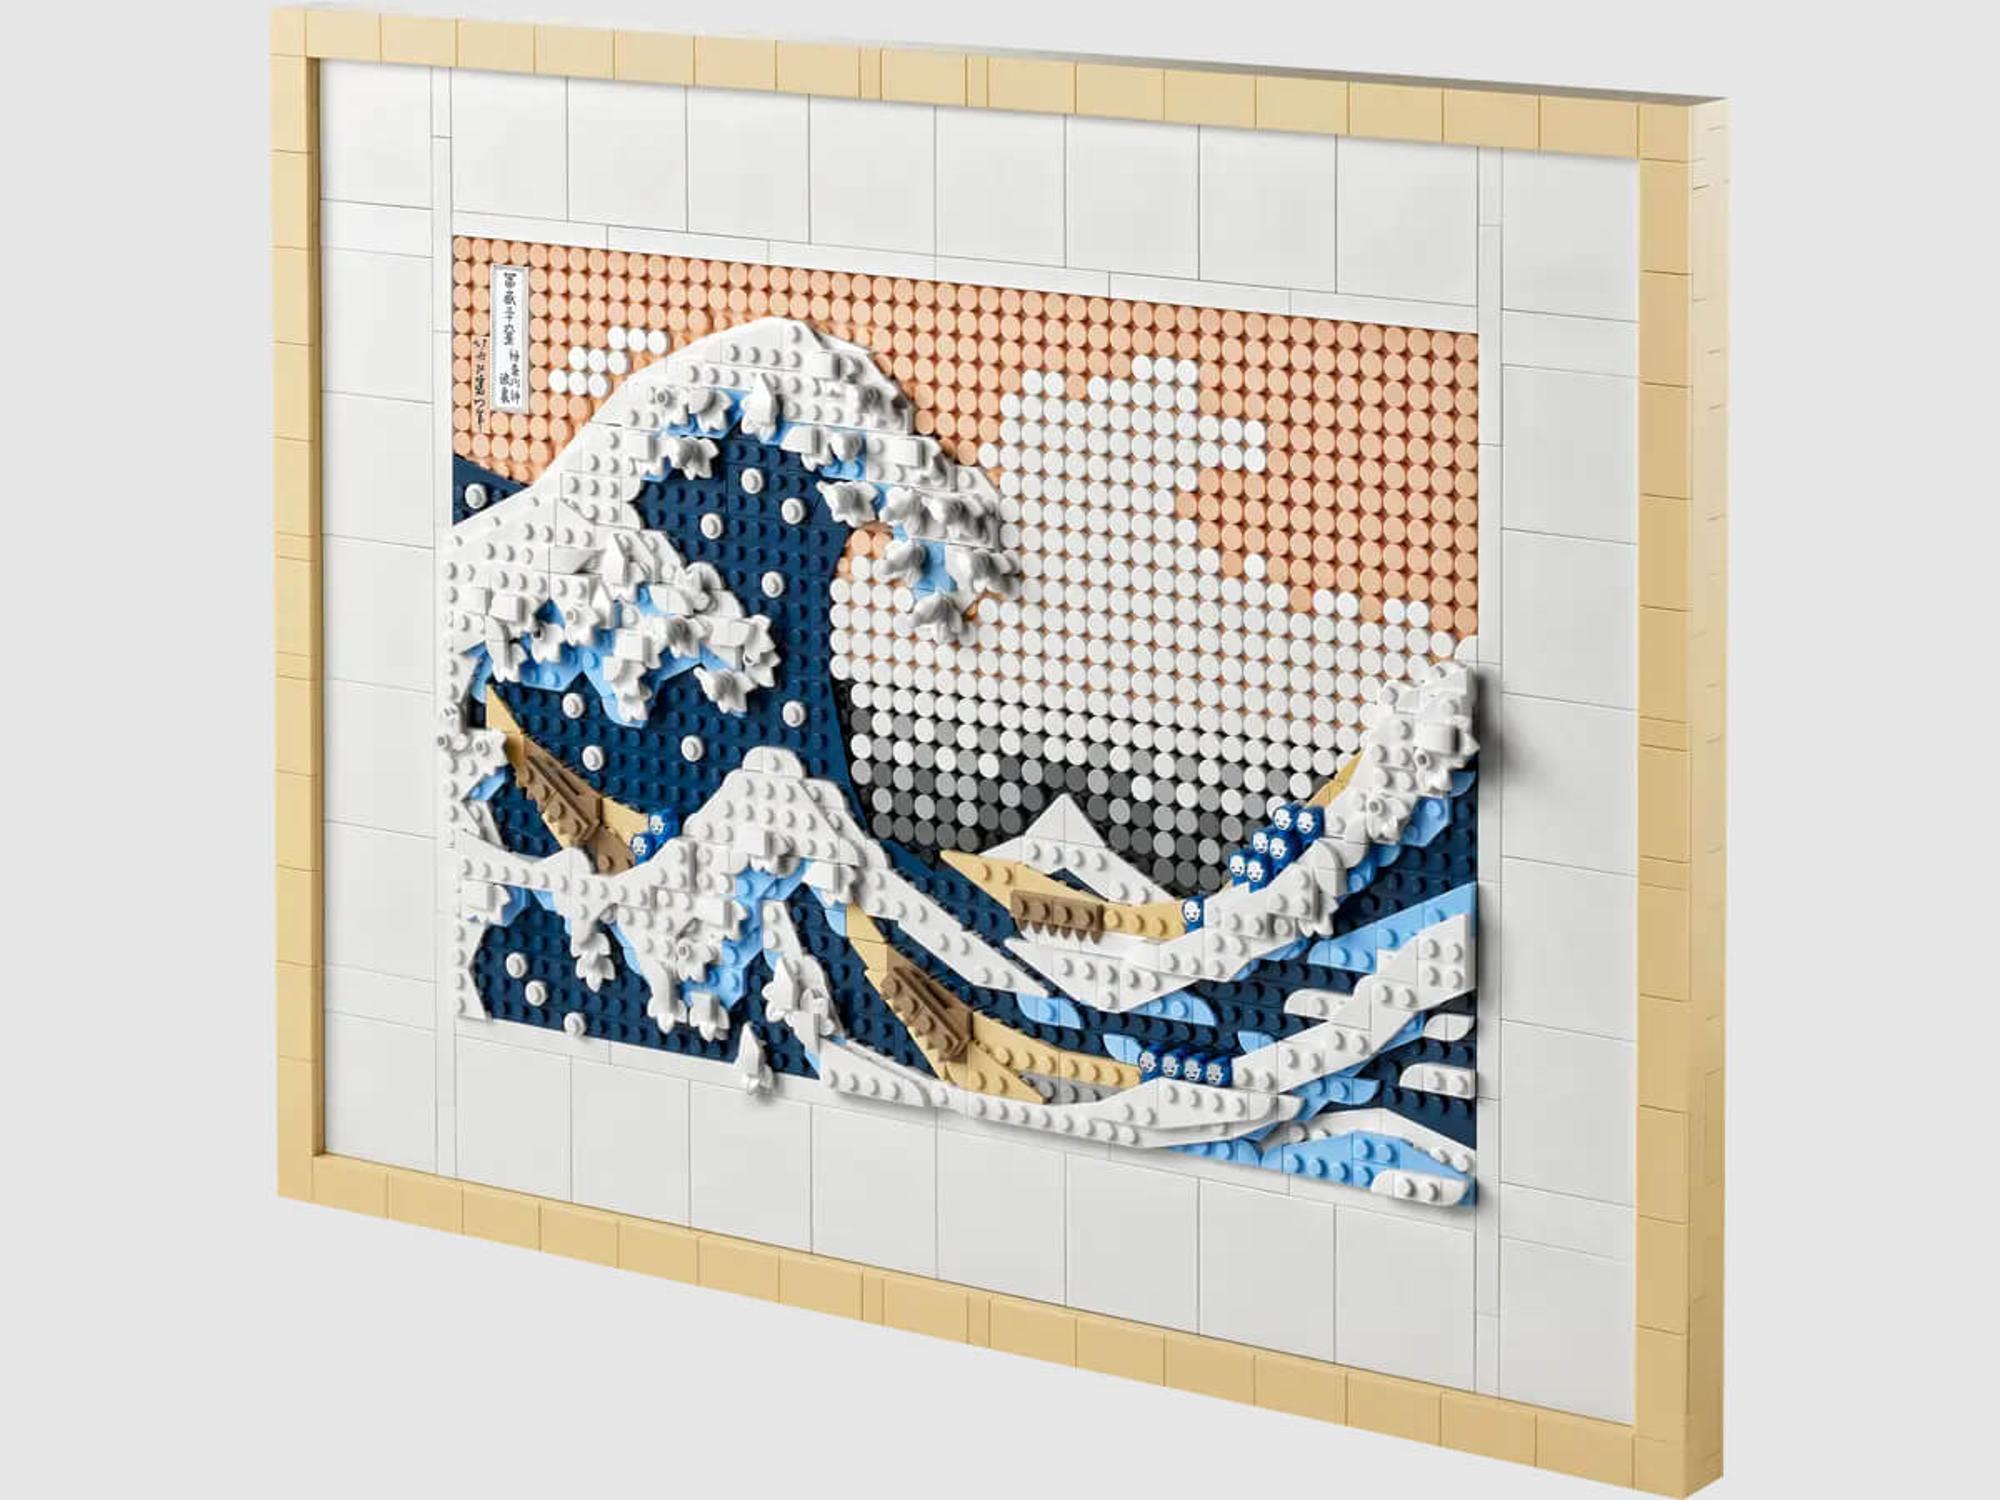 LEGO Art - Hokusai - The Great Wave